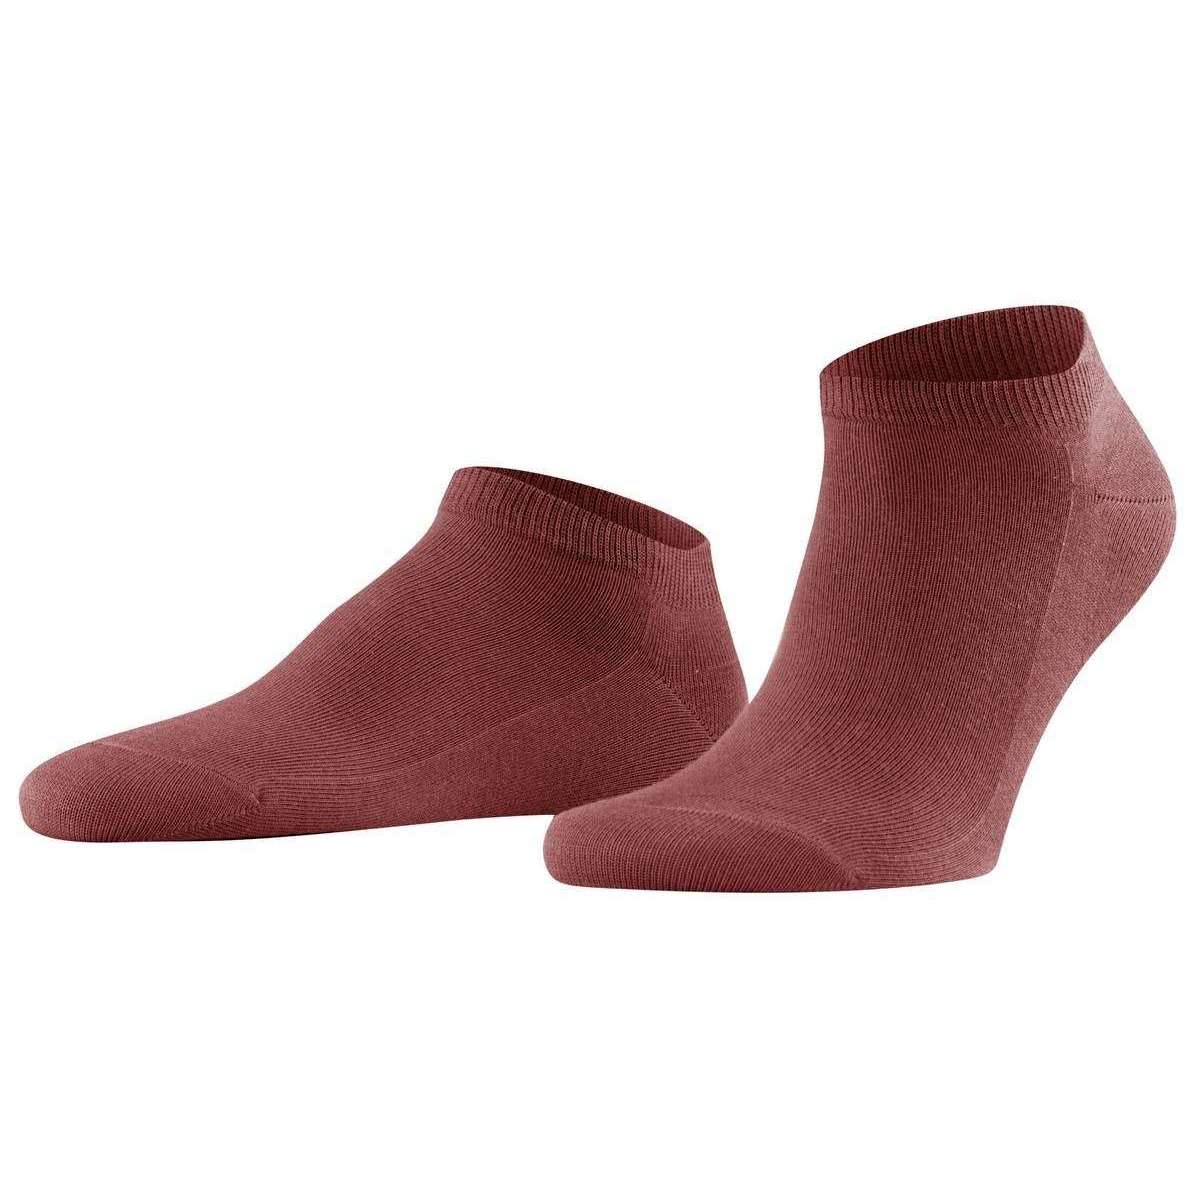 Falke Family Sneaker Socks - Rust Red